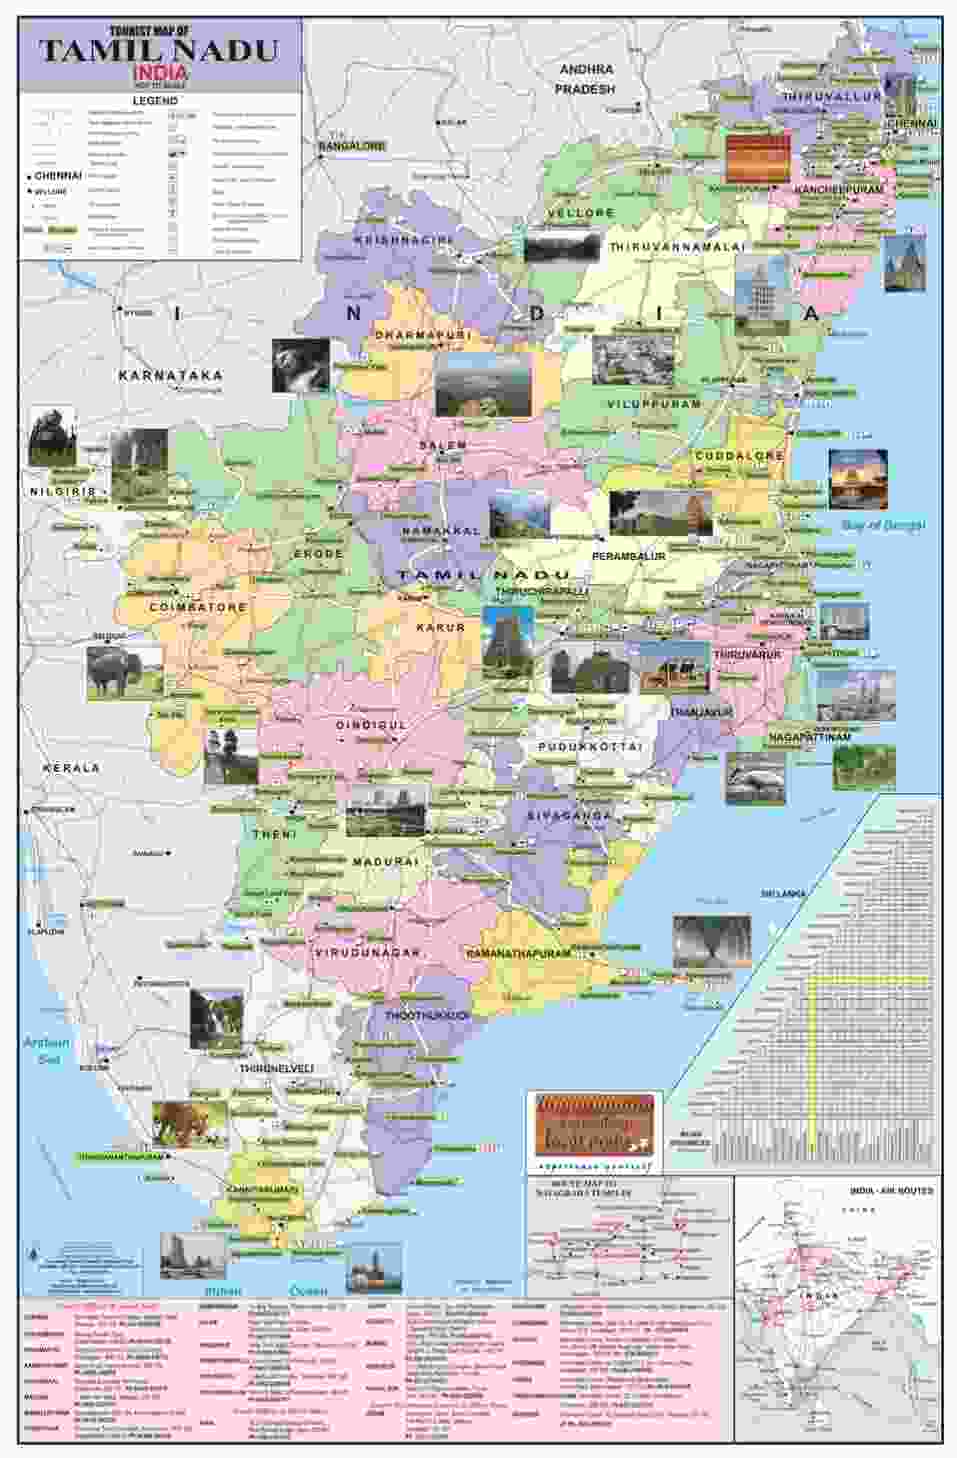 Tamil Nadu Tourist Places List, Travel Guide, Tourist Map PDF